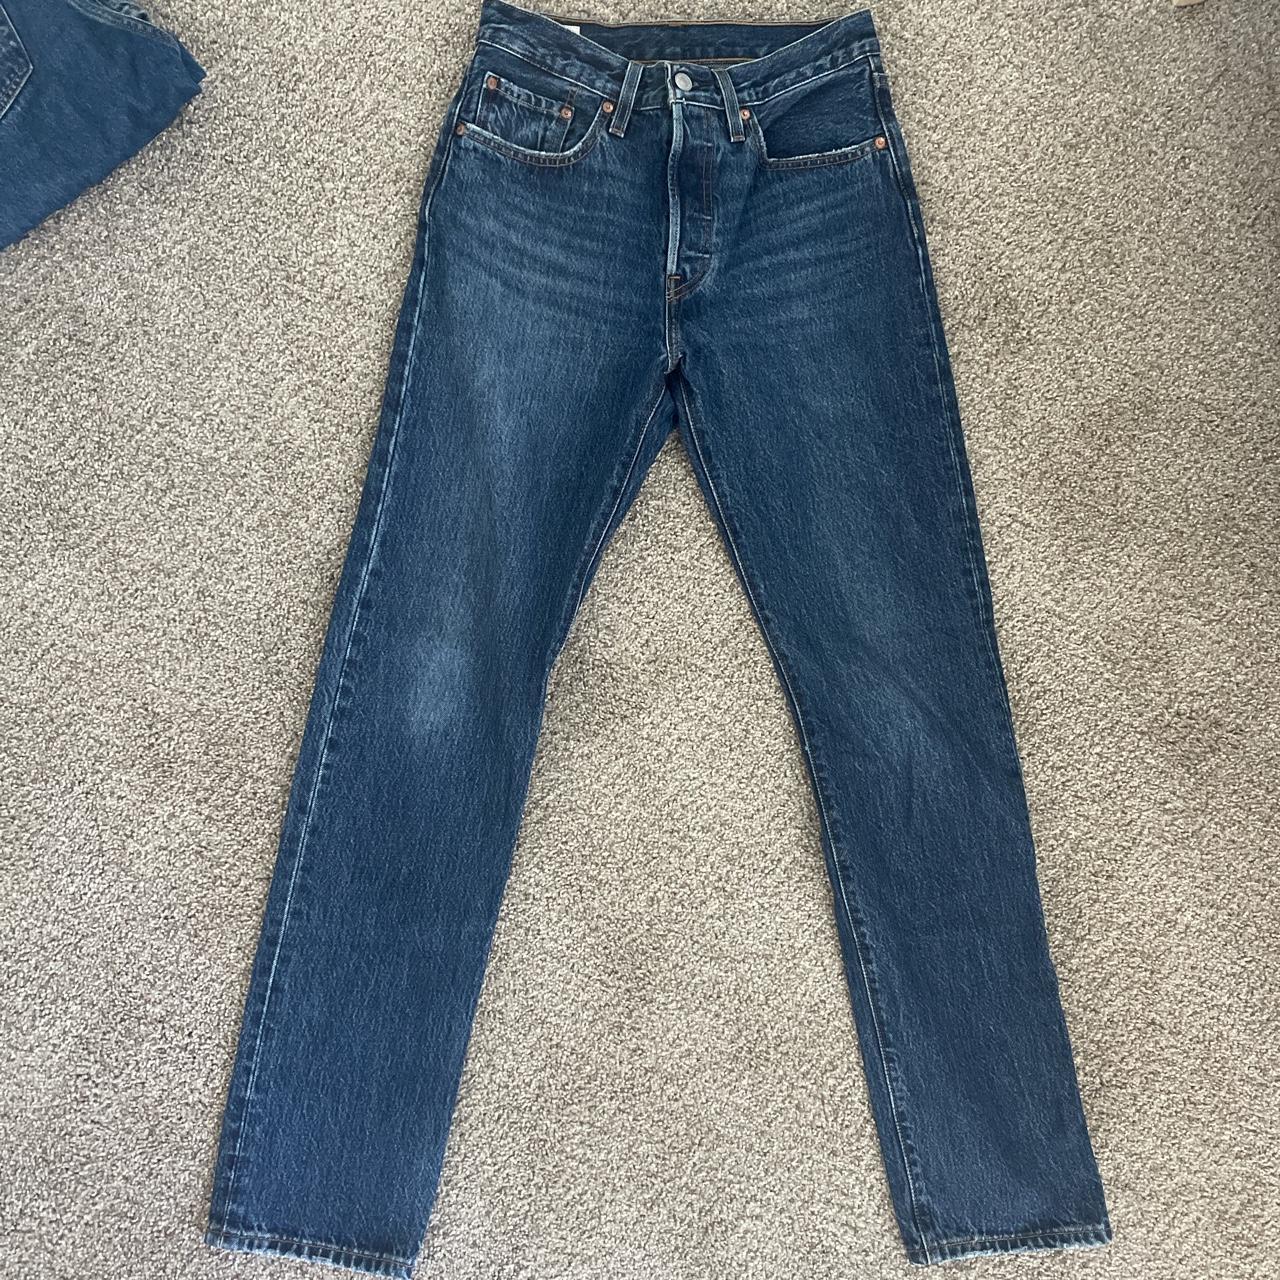 Levi’s 501 classic jeans - Depop